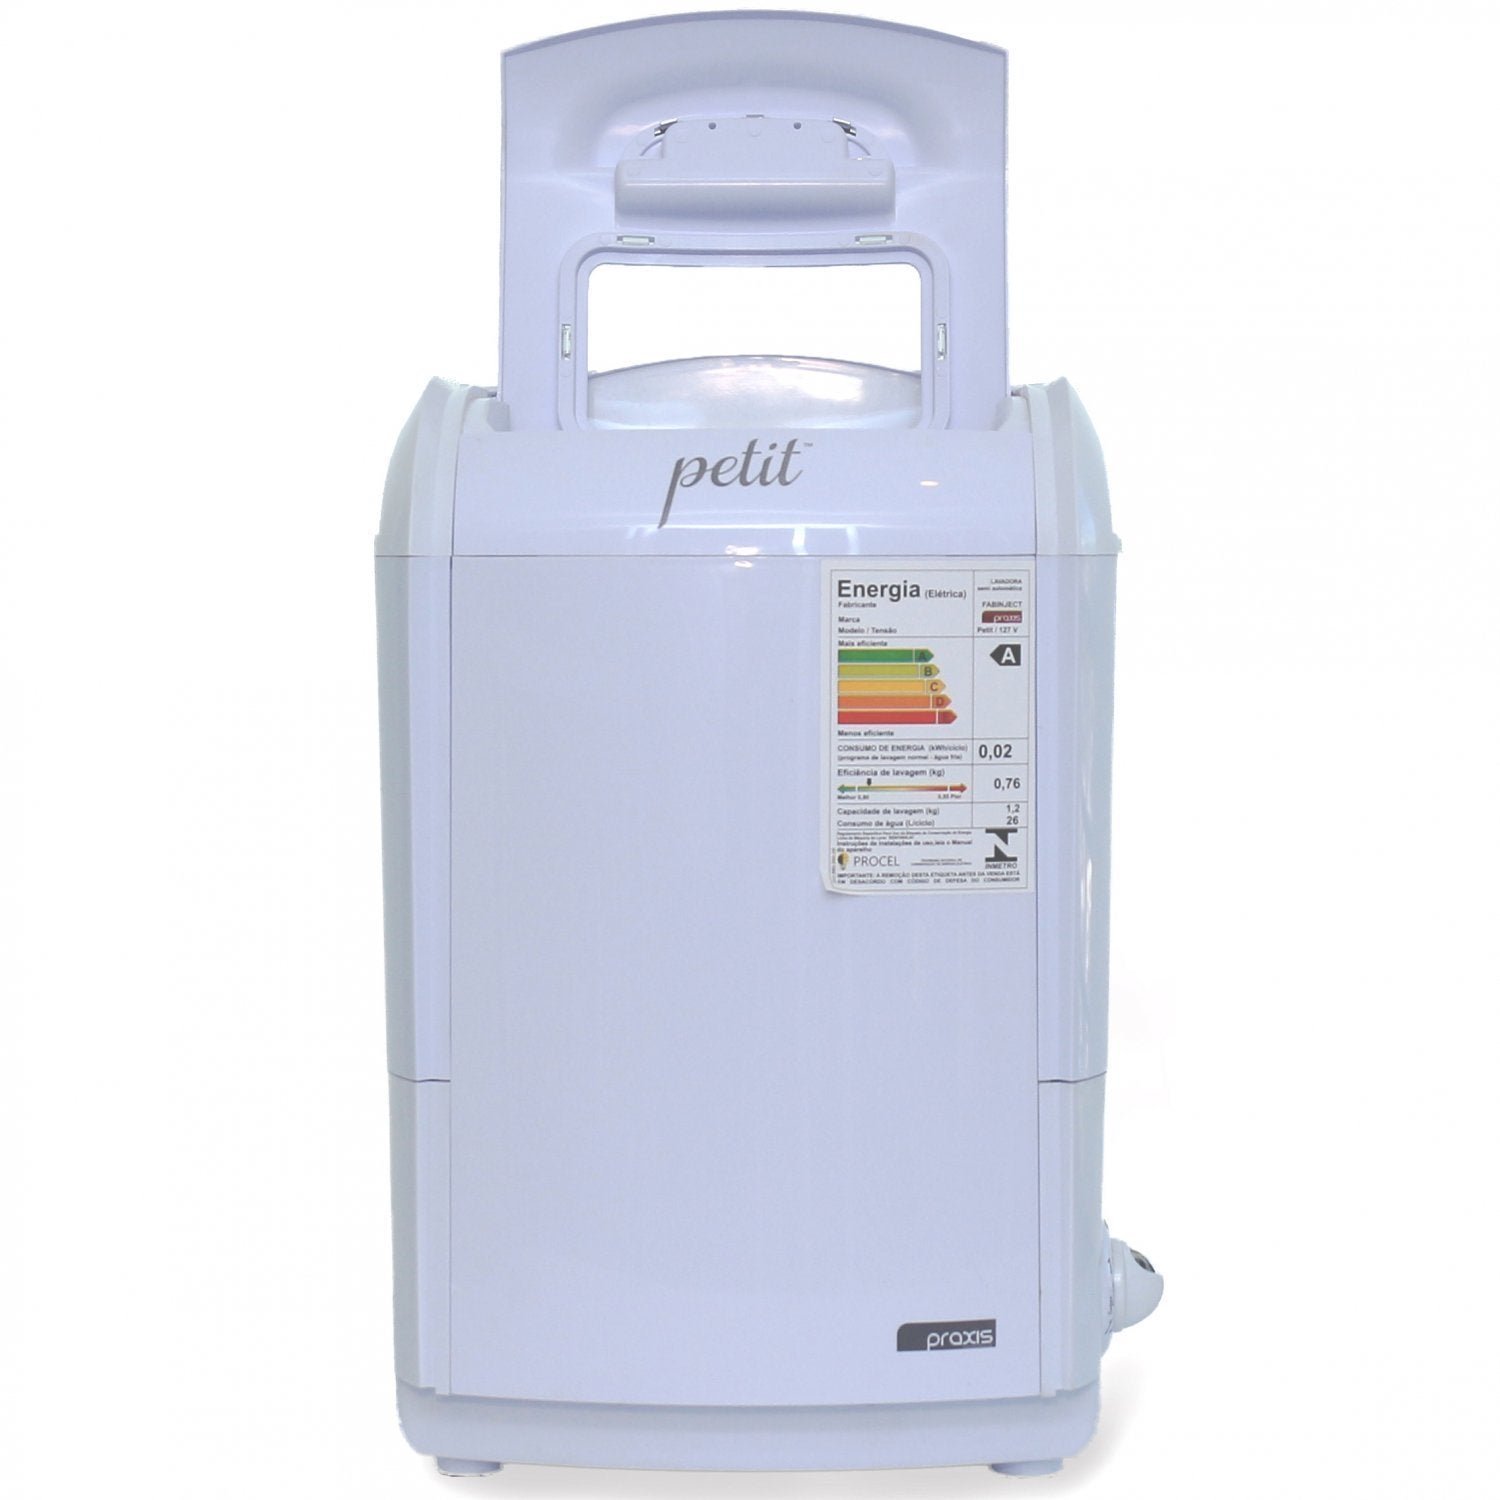 Máquina de Lavar Semi-Automática 1.2kg 110V Praxis Petit Grifit - 3